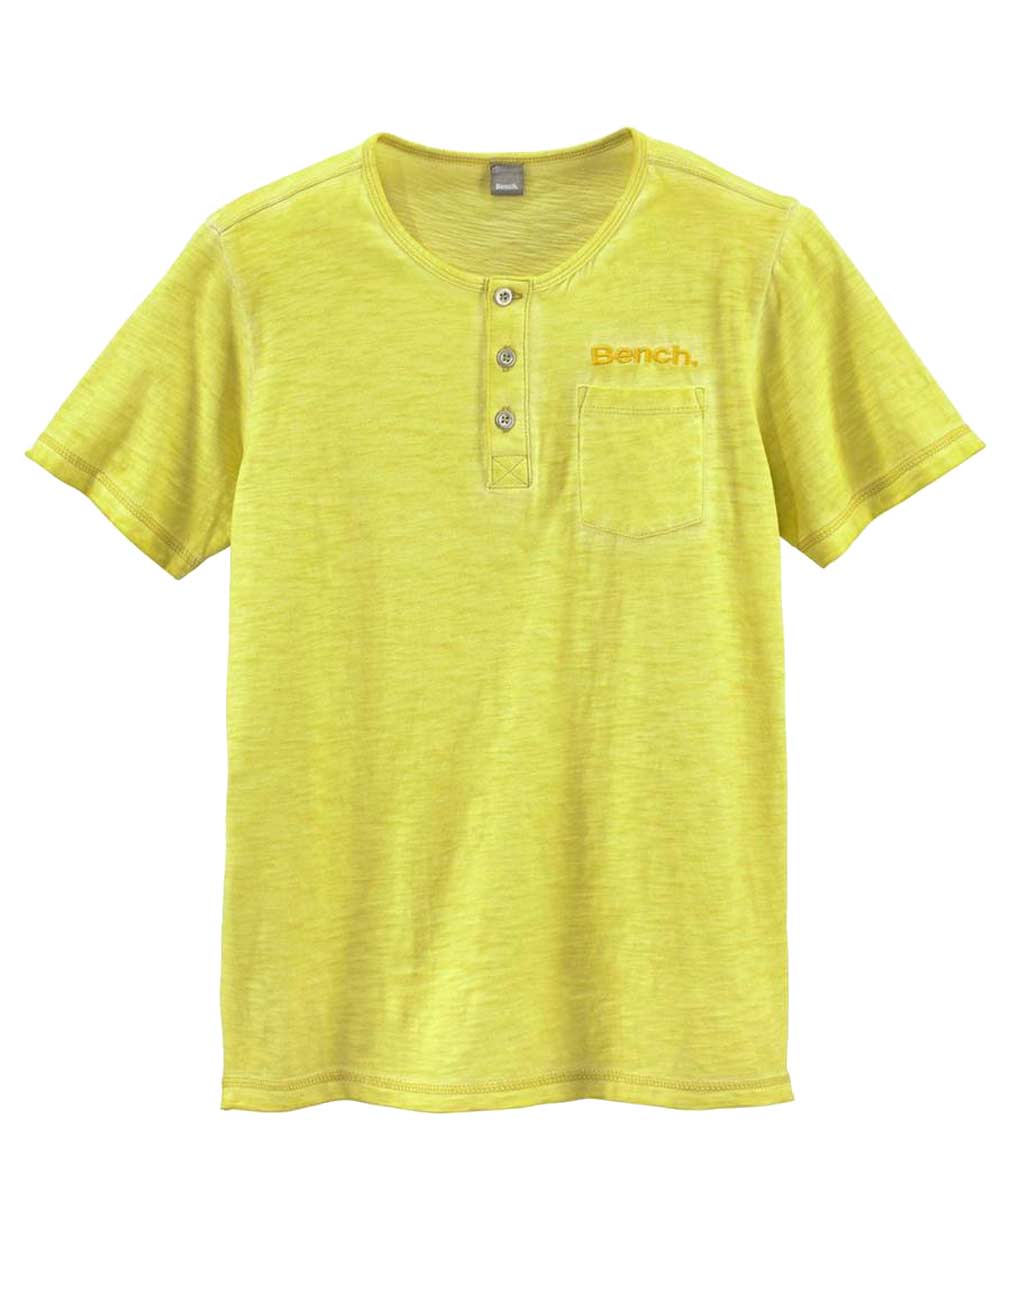 Bench Marken-Kinder-Shirt, gelb